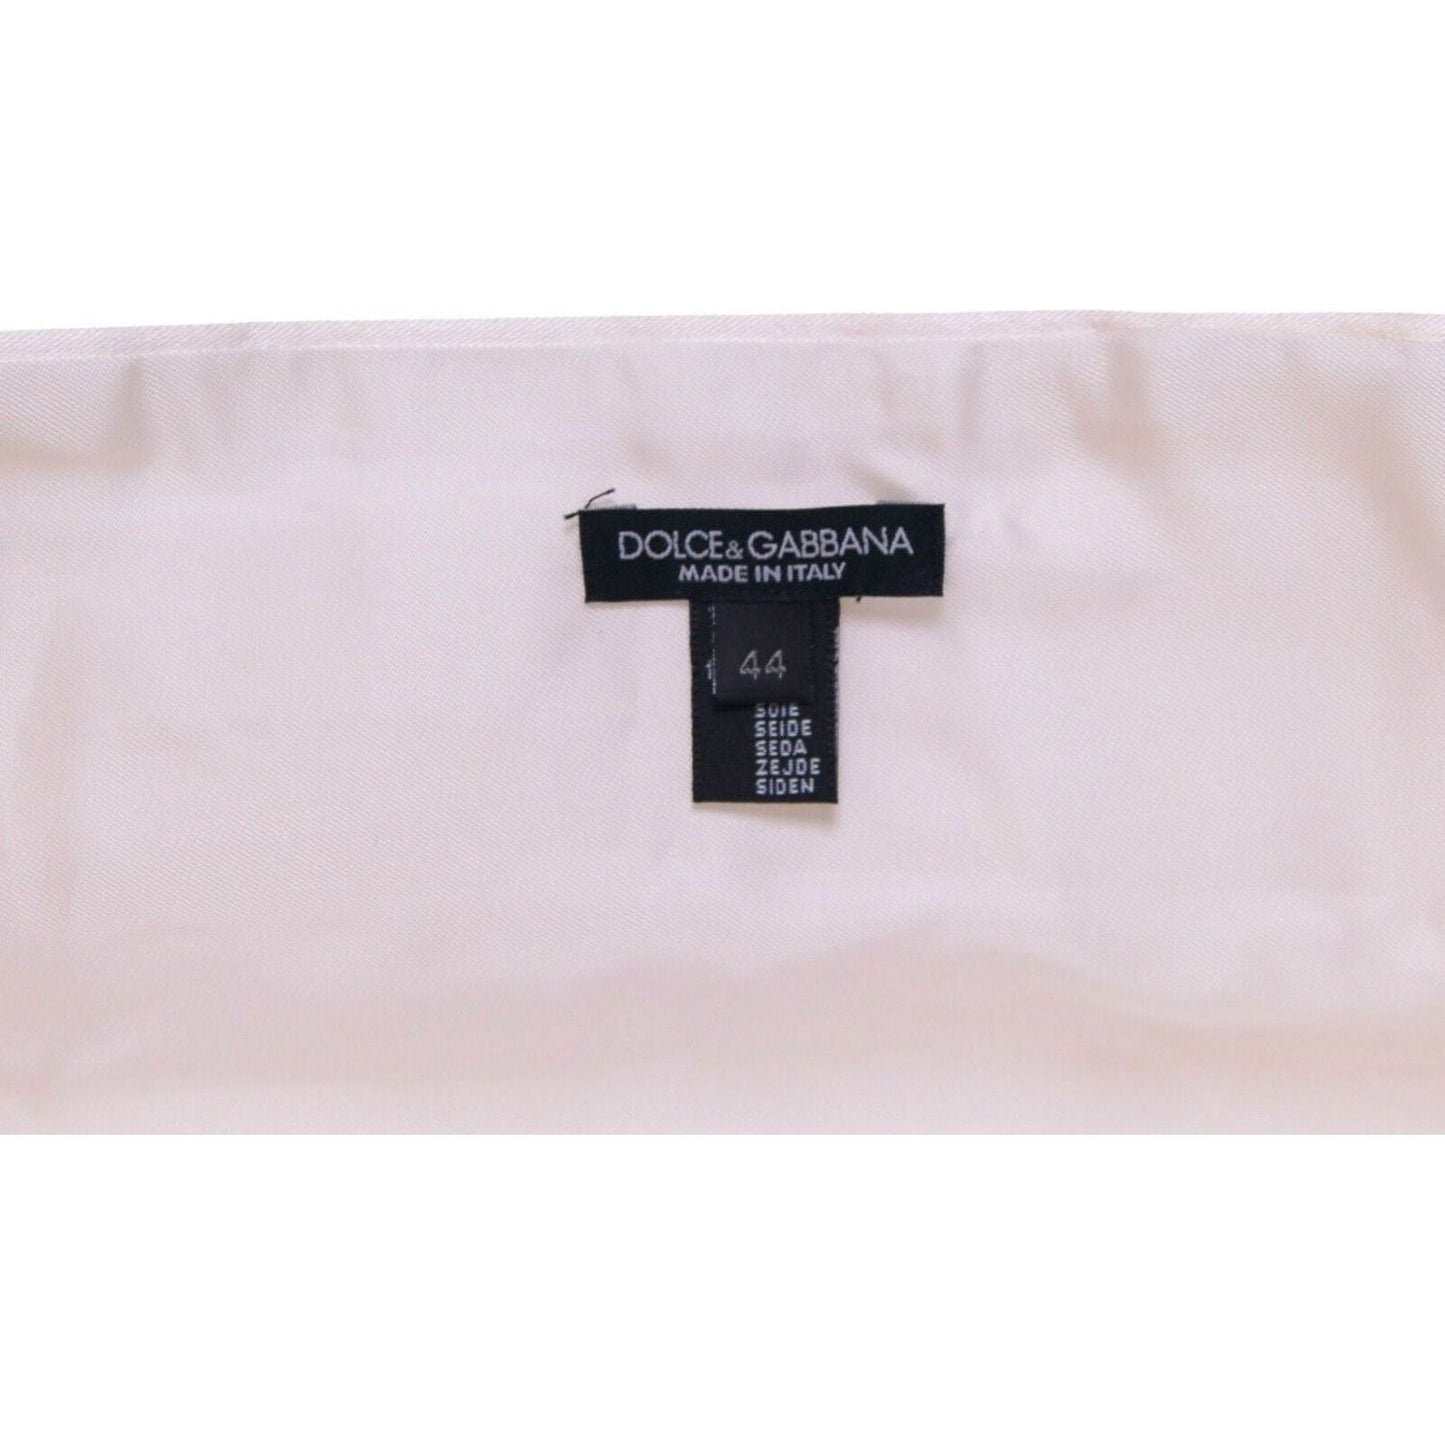 Dolce & Gabbana Elegant White Silk Cummerbund white-waist-tuxedo-smoking-belt-cummerbund